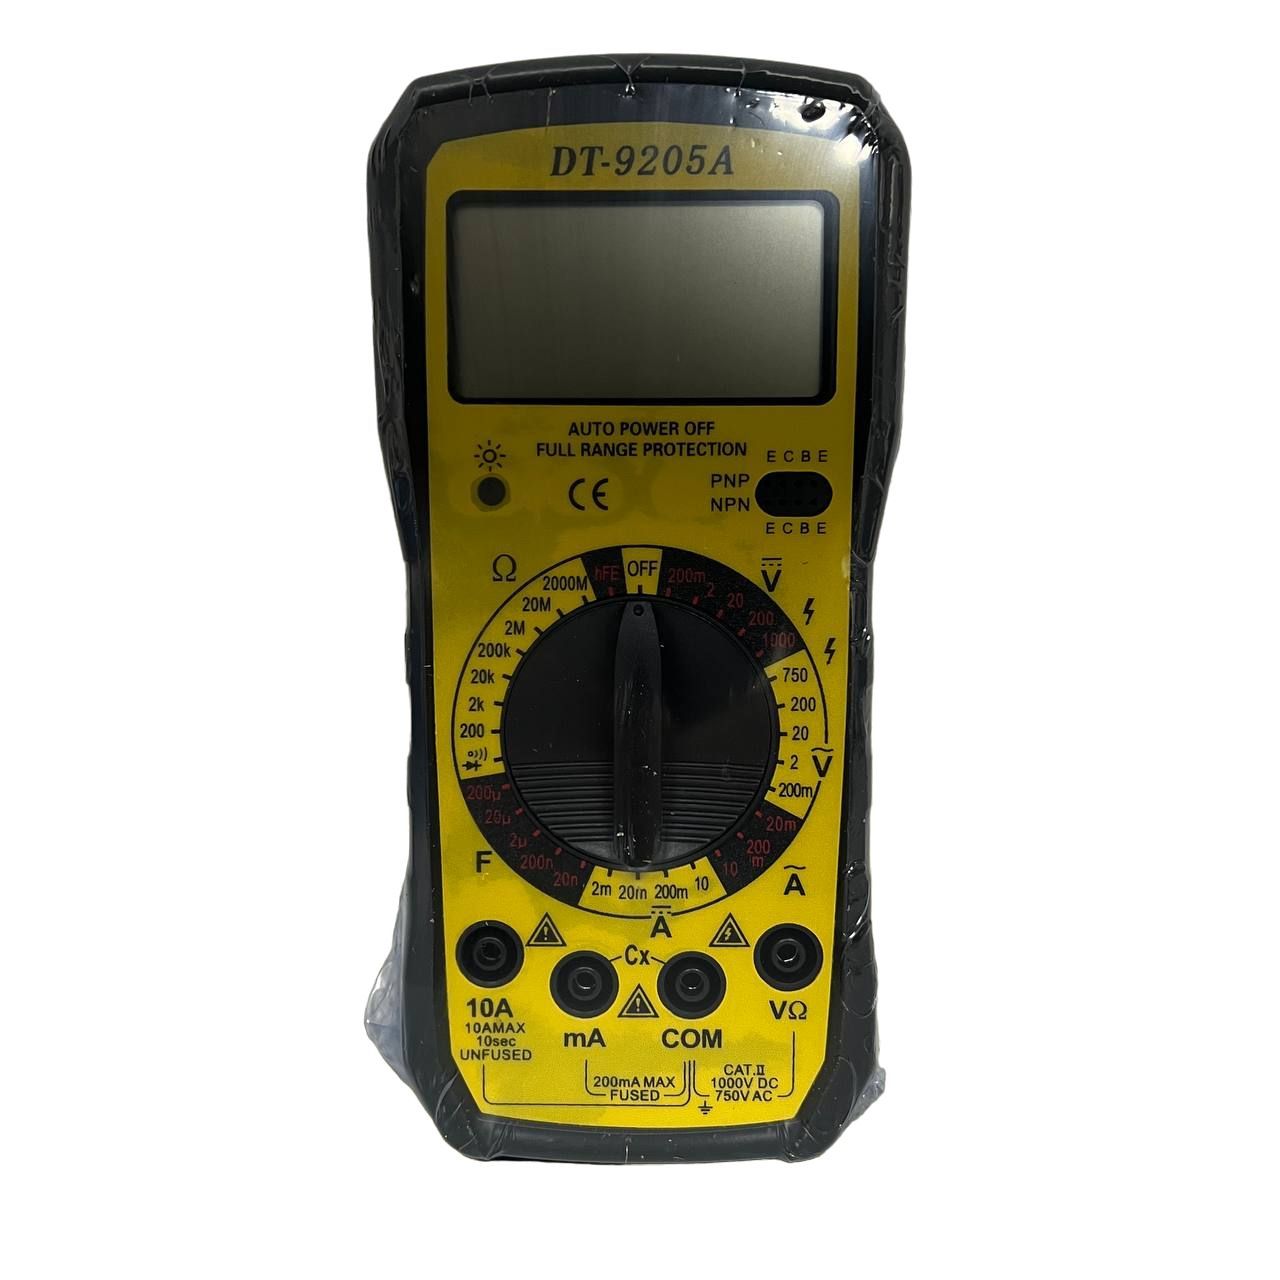 Мультиметр(тестер)сцифровымдисплеемDT-9205А,инструментдляремонтапроводки